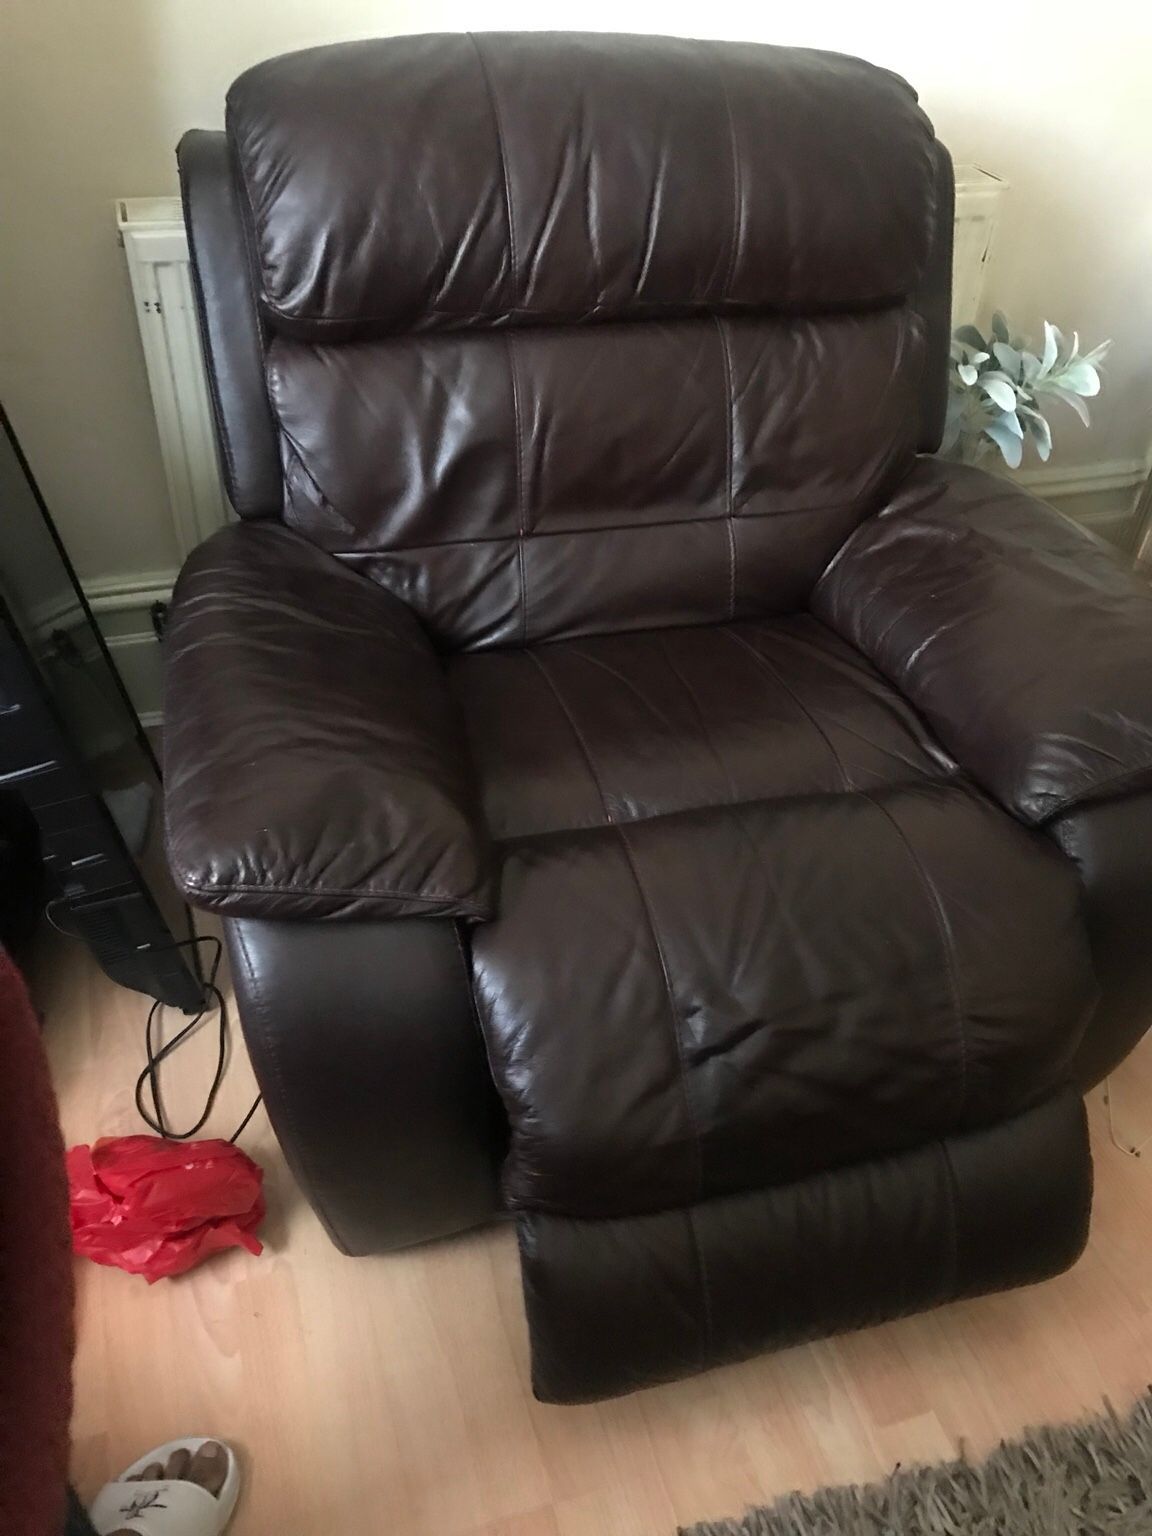 Https://en.shpock/i/w5dlazjikcaljx60/ 2018 09 06t10:27:56+02 Regarding Moana Blue Leather Power Reclining Sofa Chairs With Usb (Photo 23 of 25)